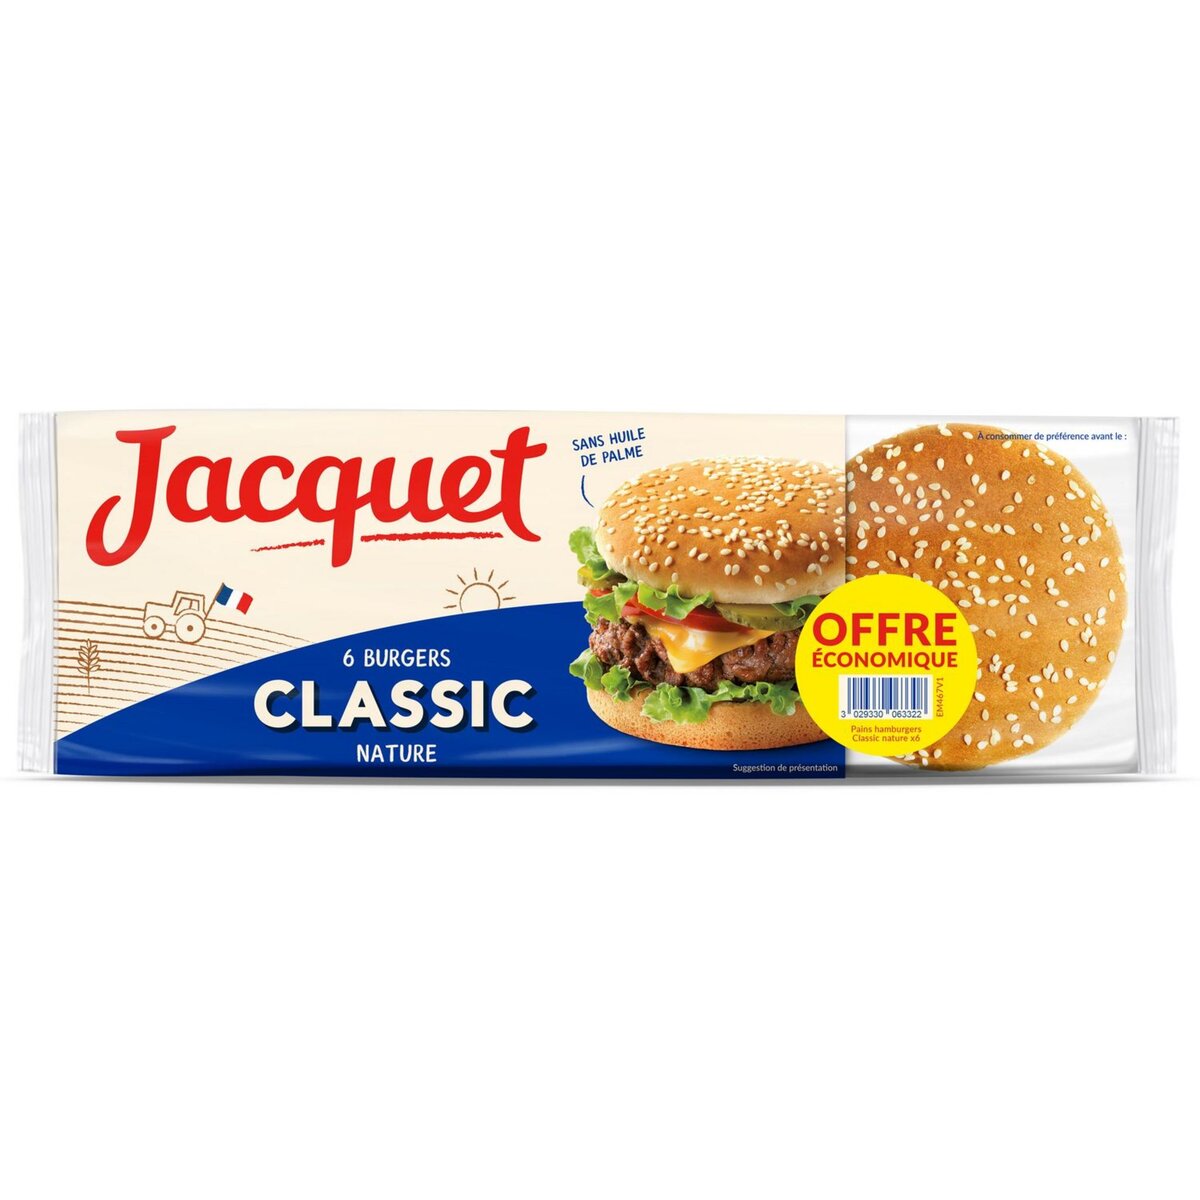 JACQUET Jacquet hamburger buns x6 -330g offre éco